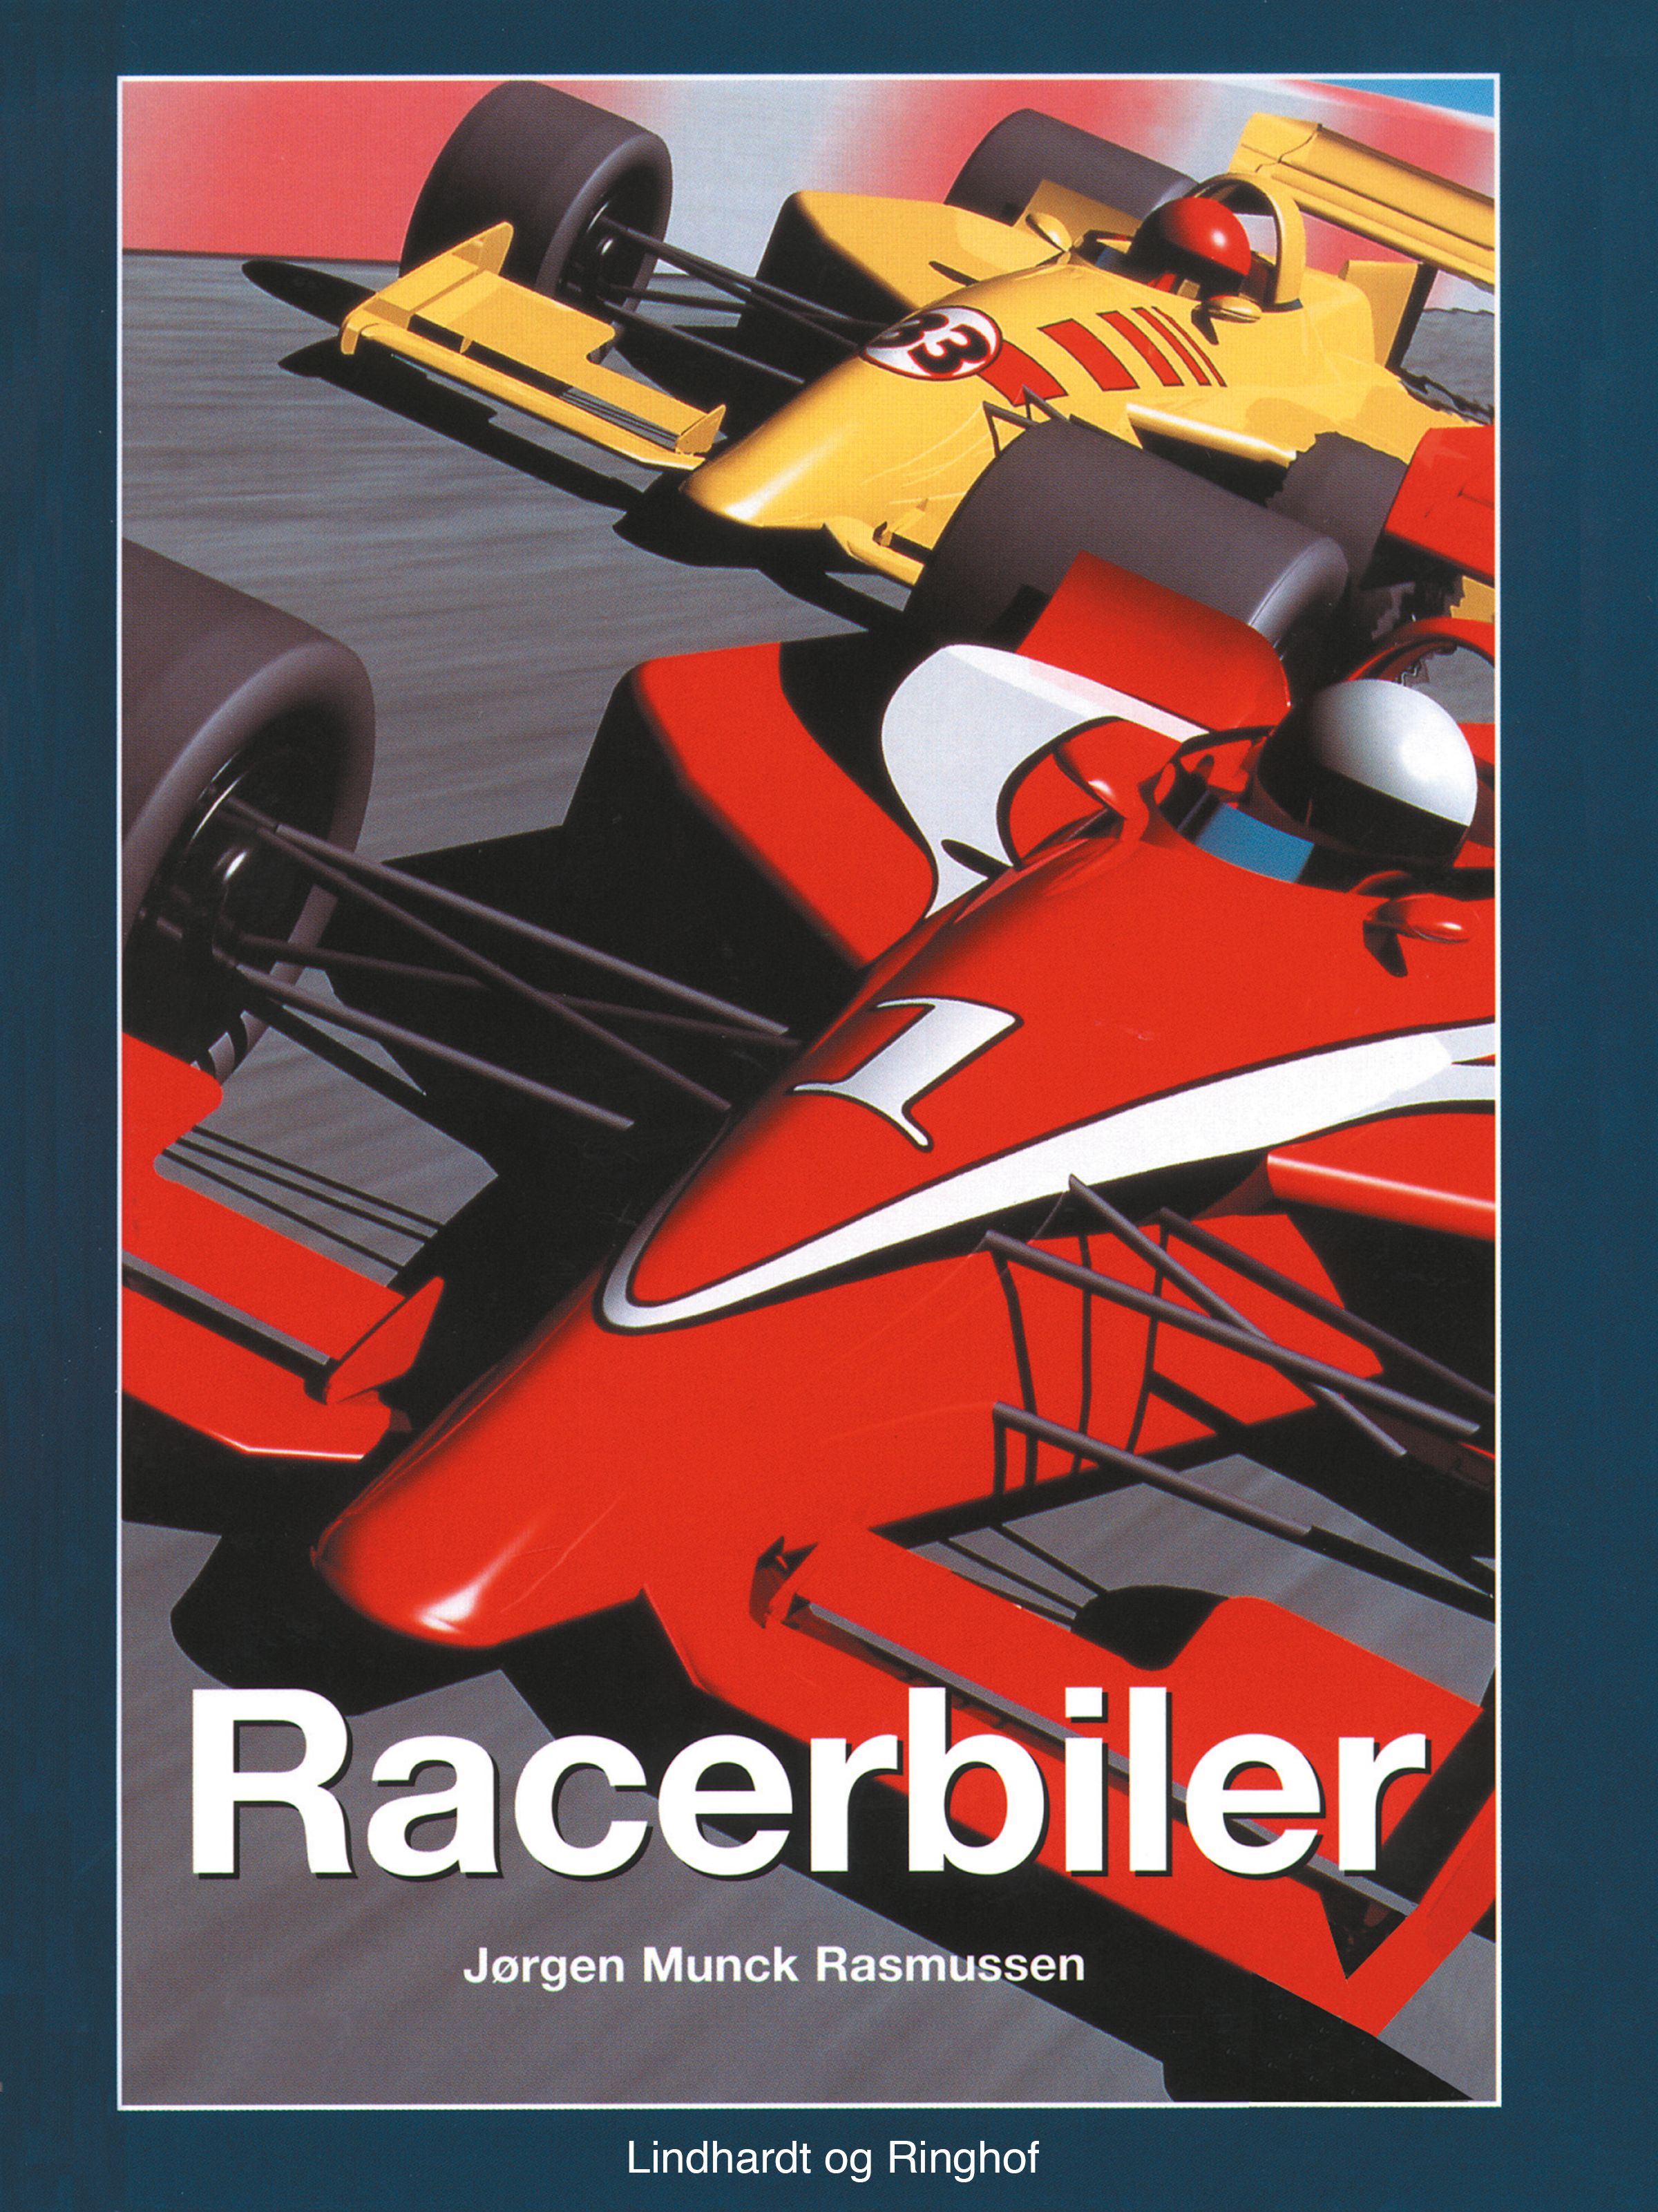 Racerbiler, lydbog af Jørgen Munck Rasmussen